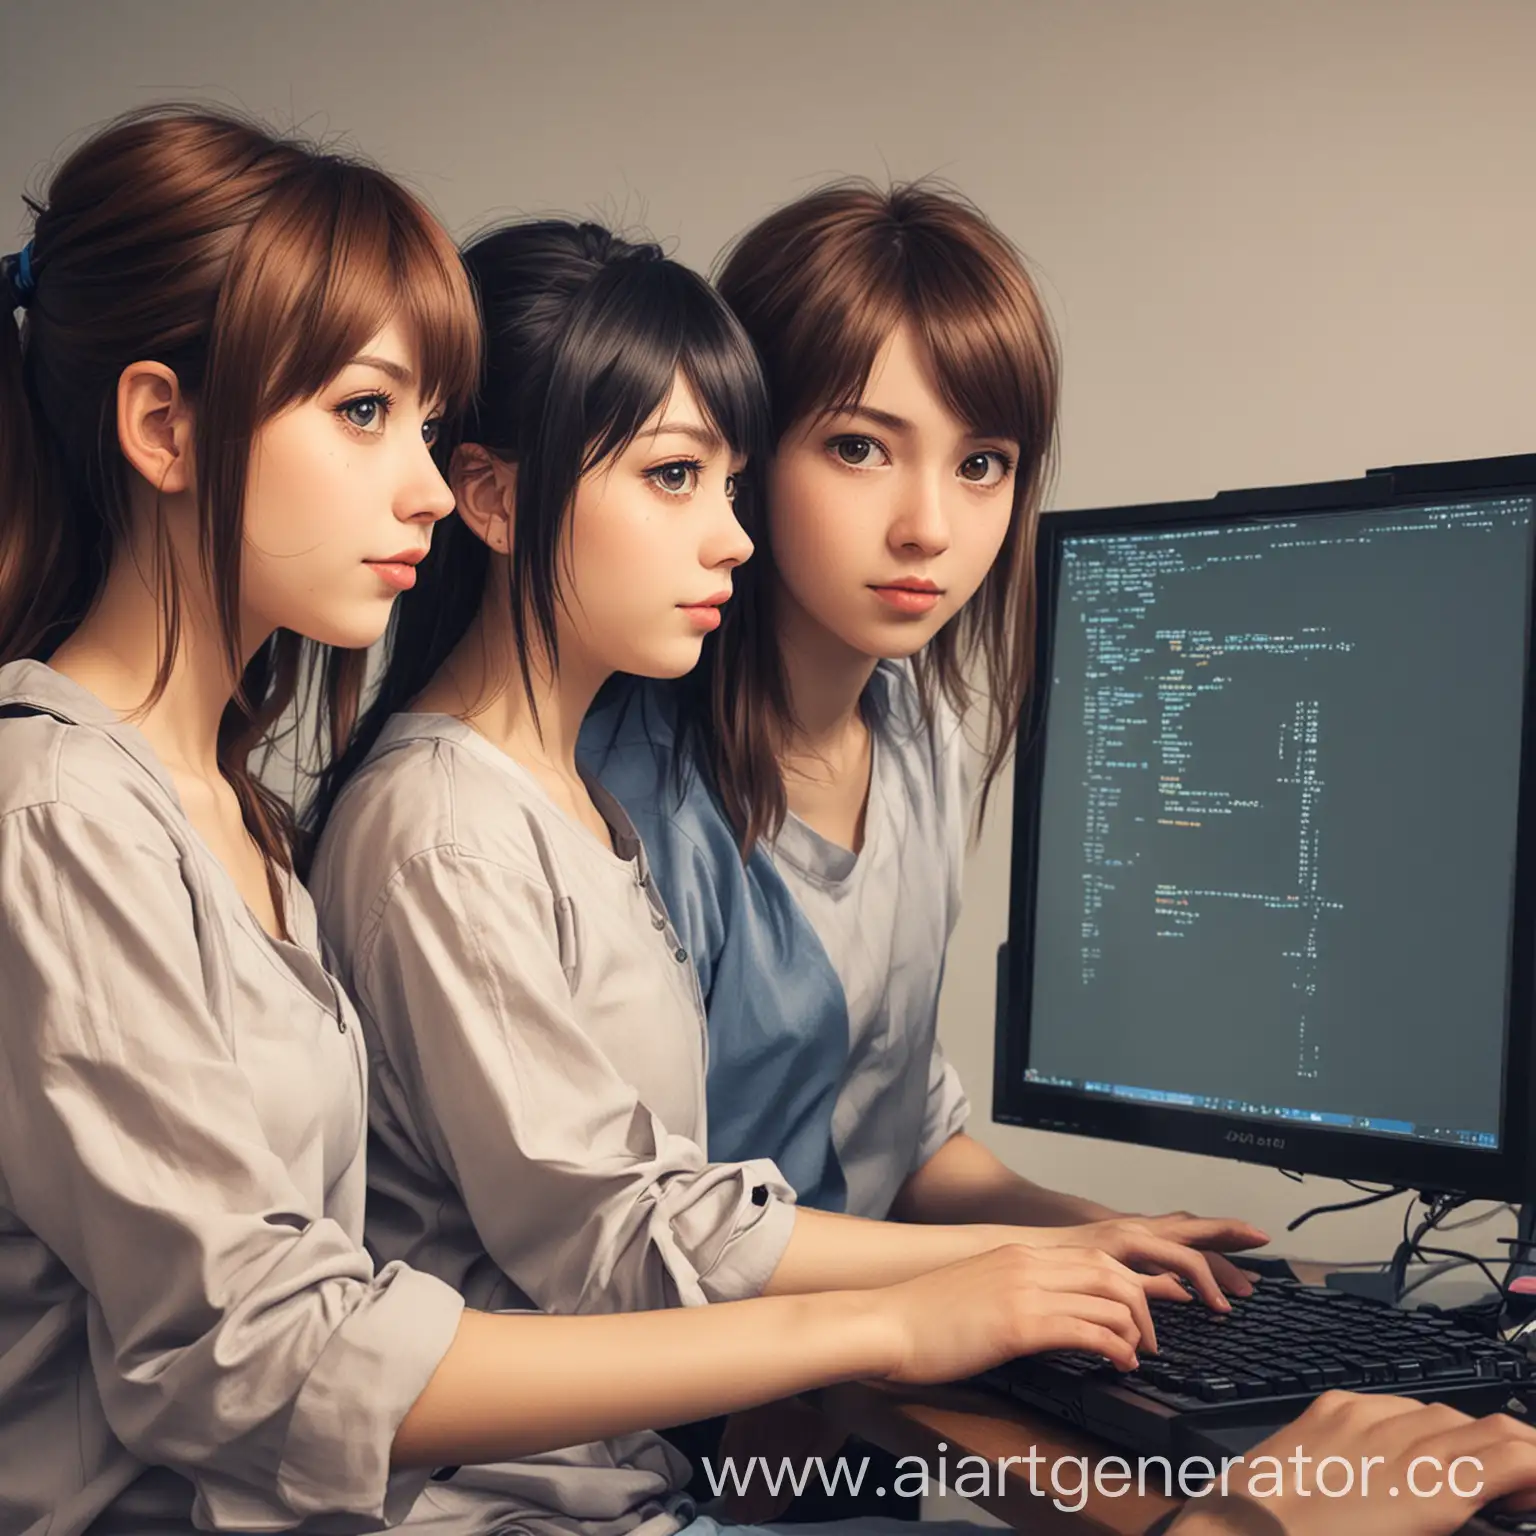 нарисуй со спины в виде аниме трех подружек программисток которые кодят на java и было видно их пк с кодом java